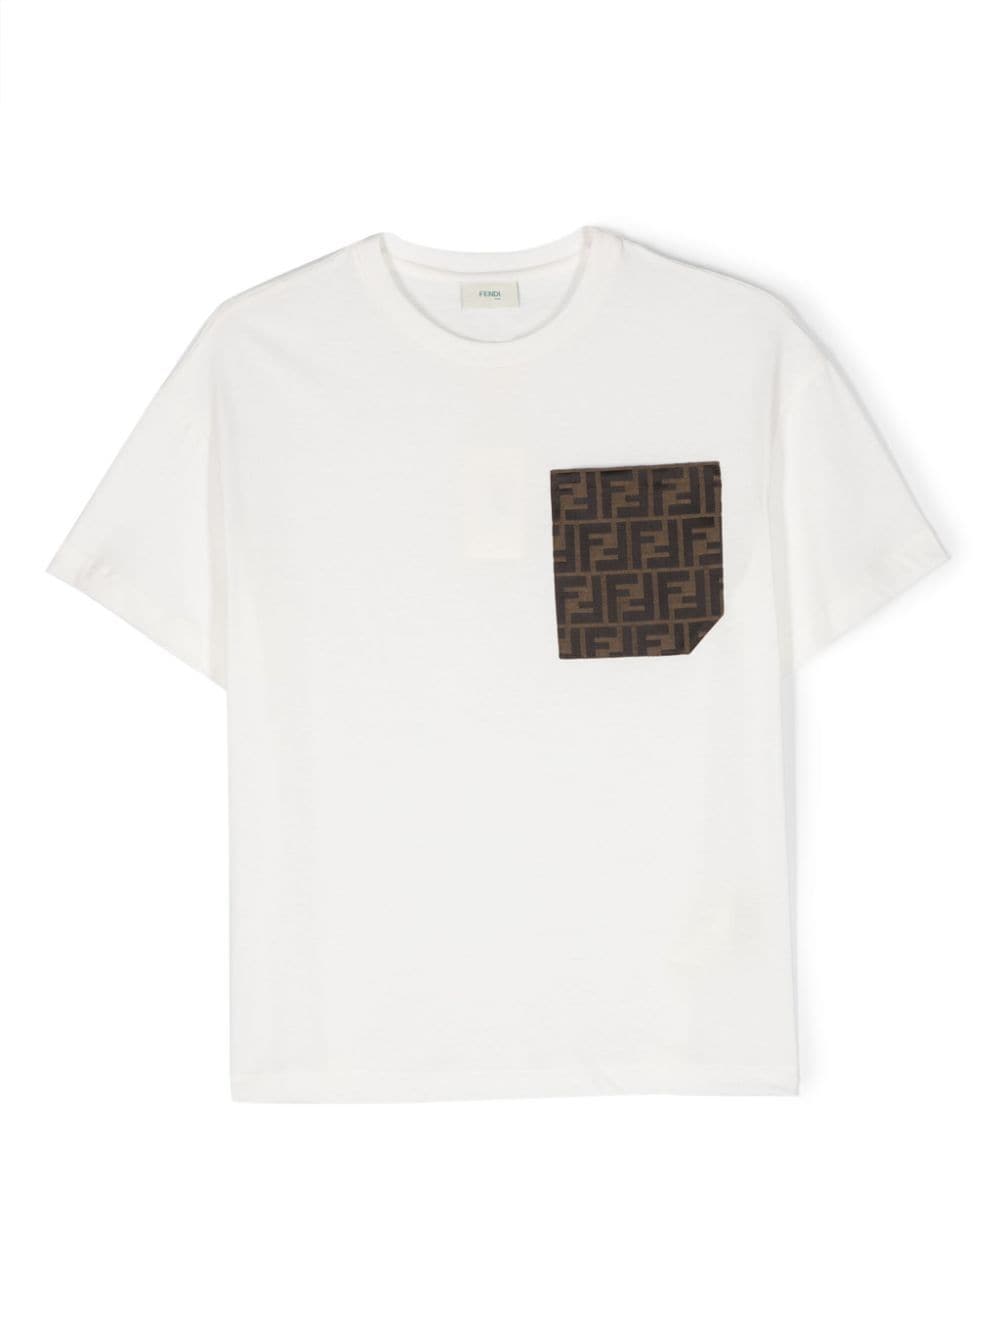 FF-logo print cotton T-shirt, Fendi Kids